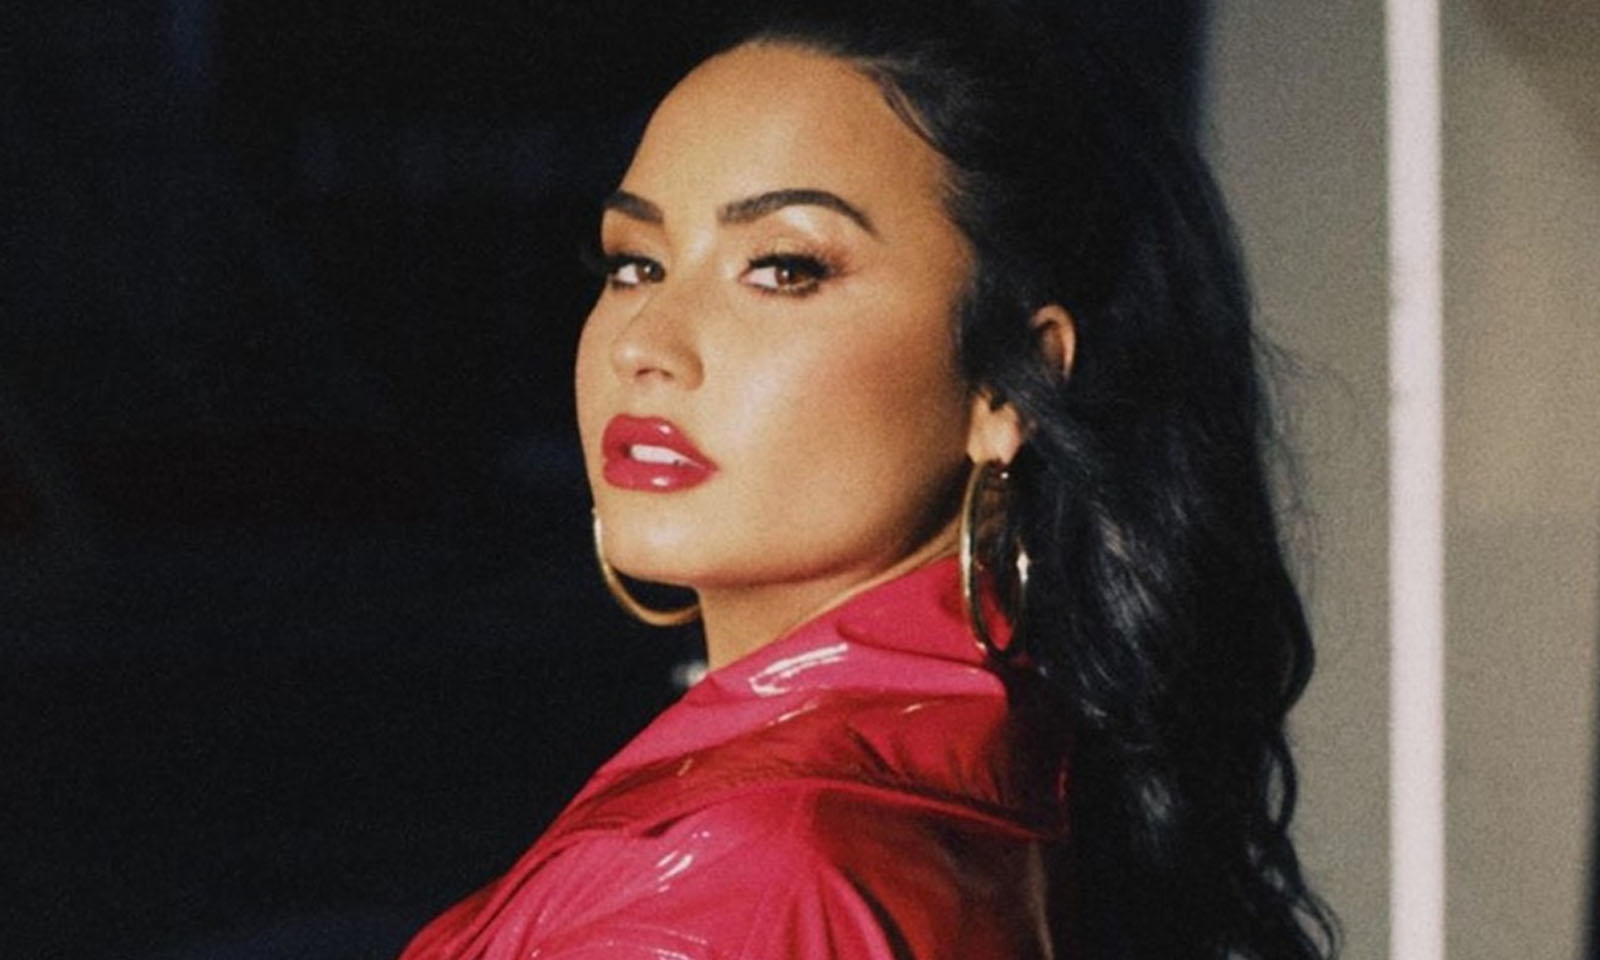 Demi Lovato divulga prévia de nova música no Instagram